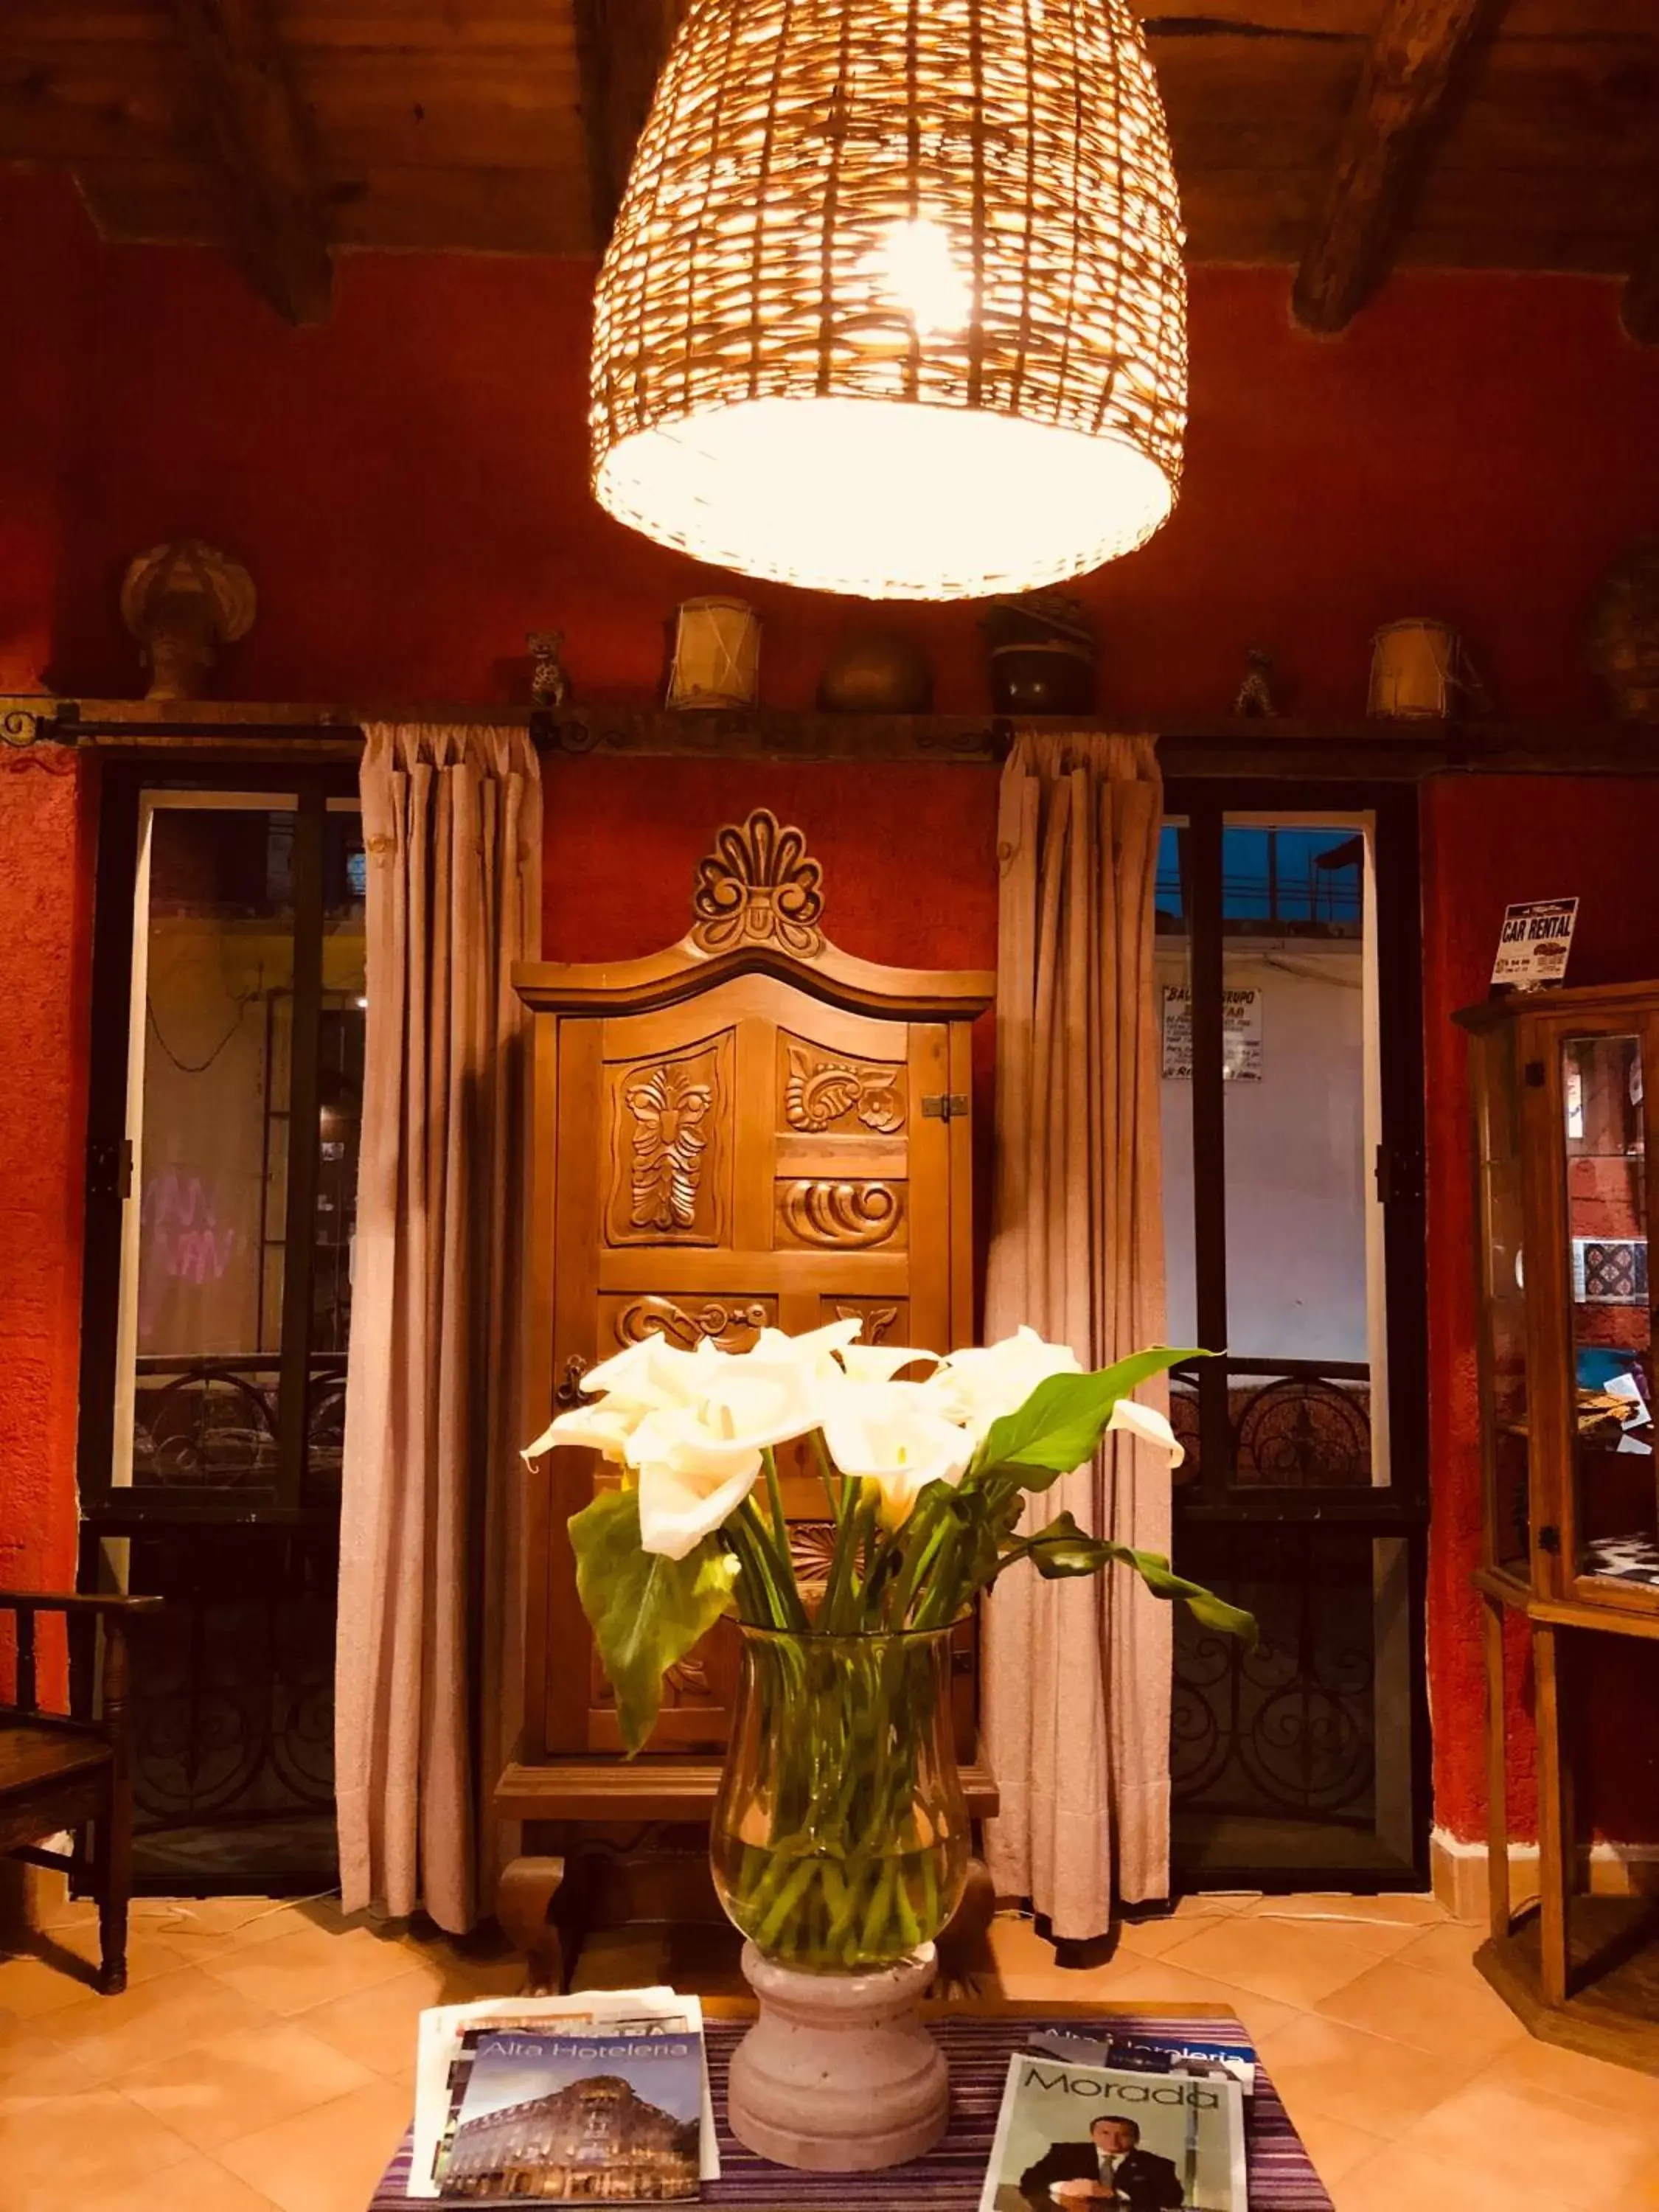 Lobby or reception, Banquet Facilities in Hotel Villas Casa Morada